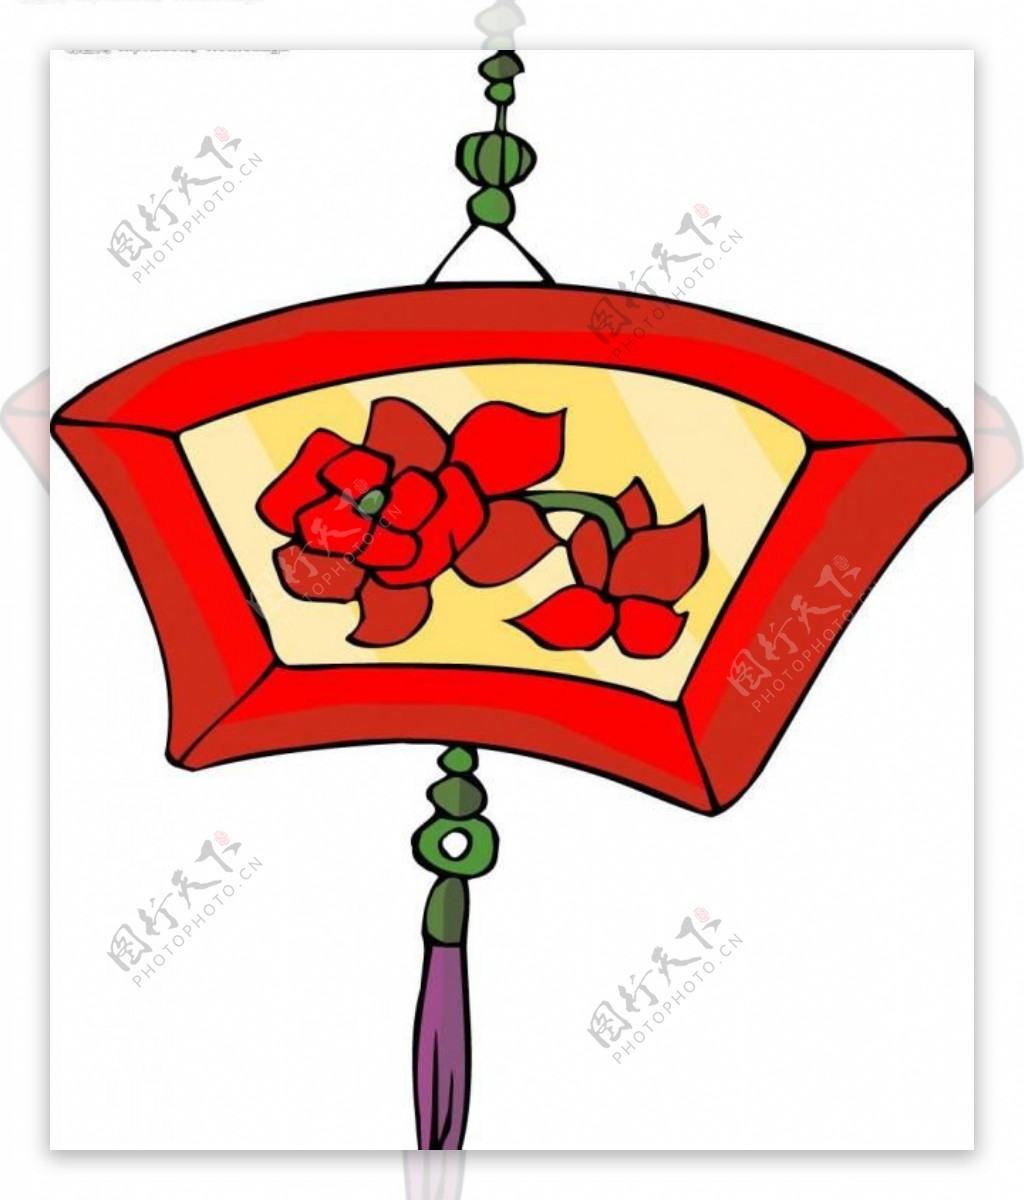 卡通风格中国传统民俗物品灯笼图片